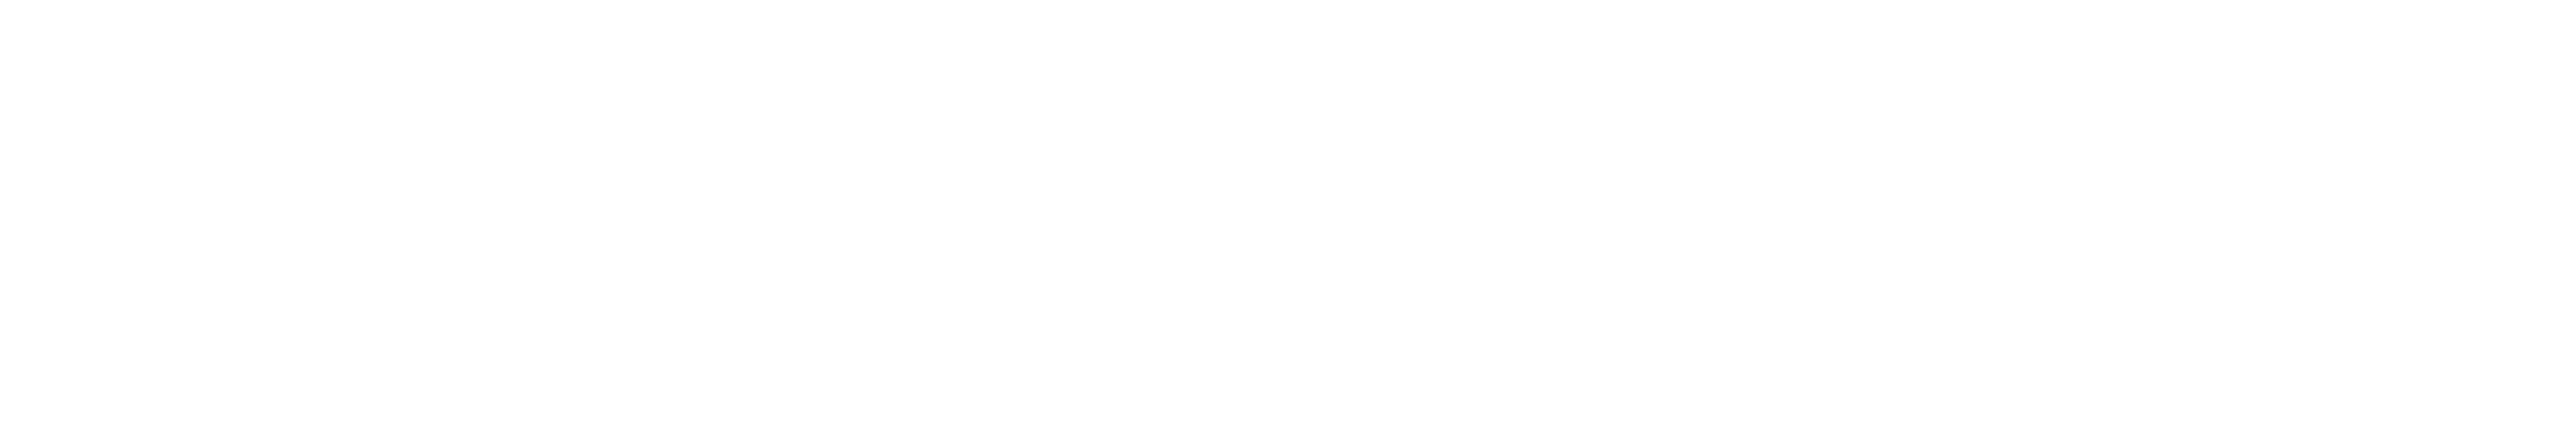 松本市のガールズバー「Eight」のロゴ